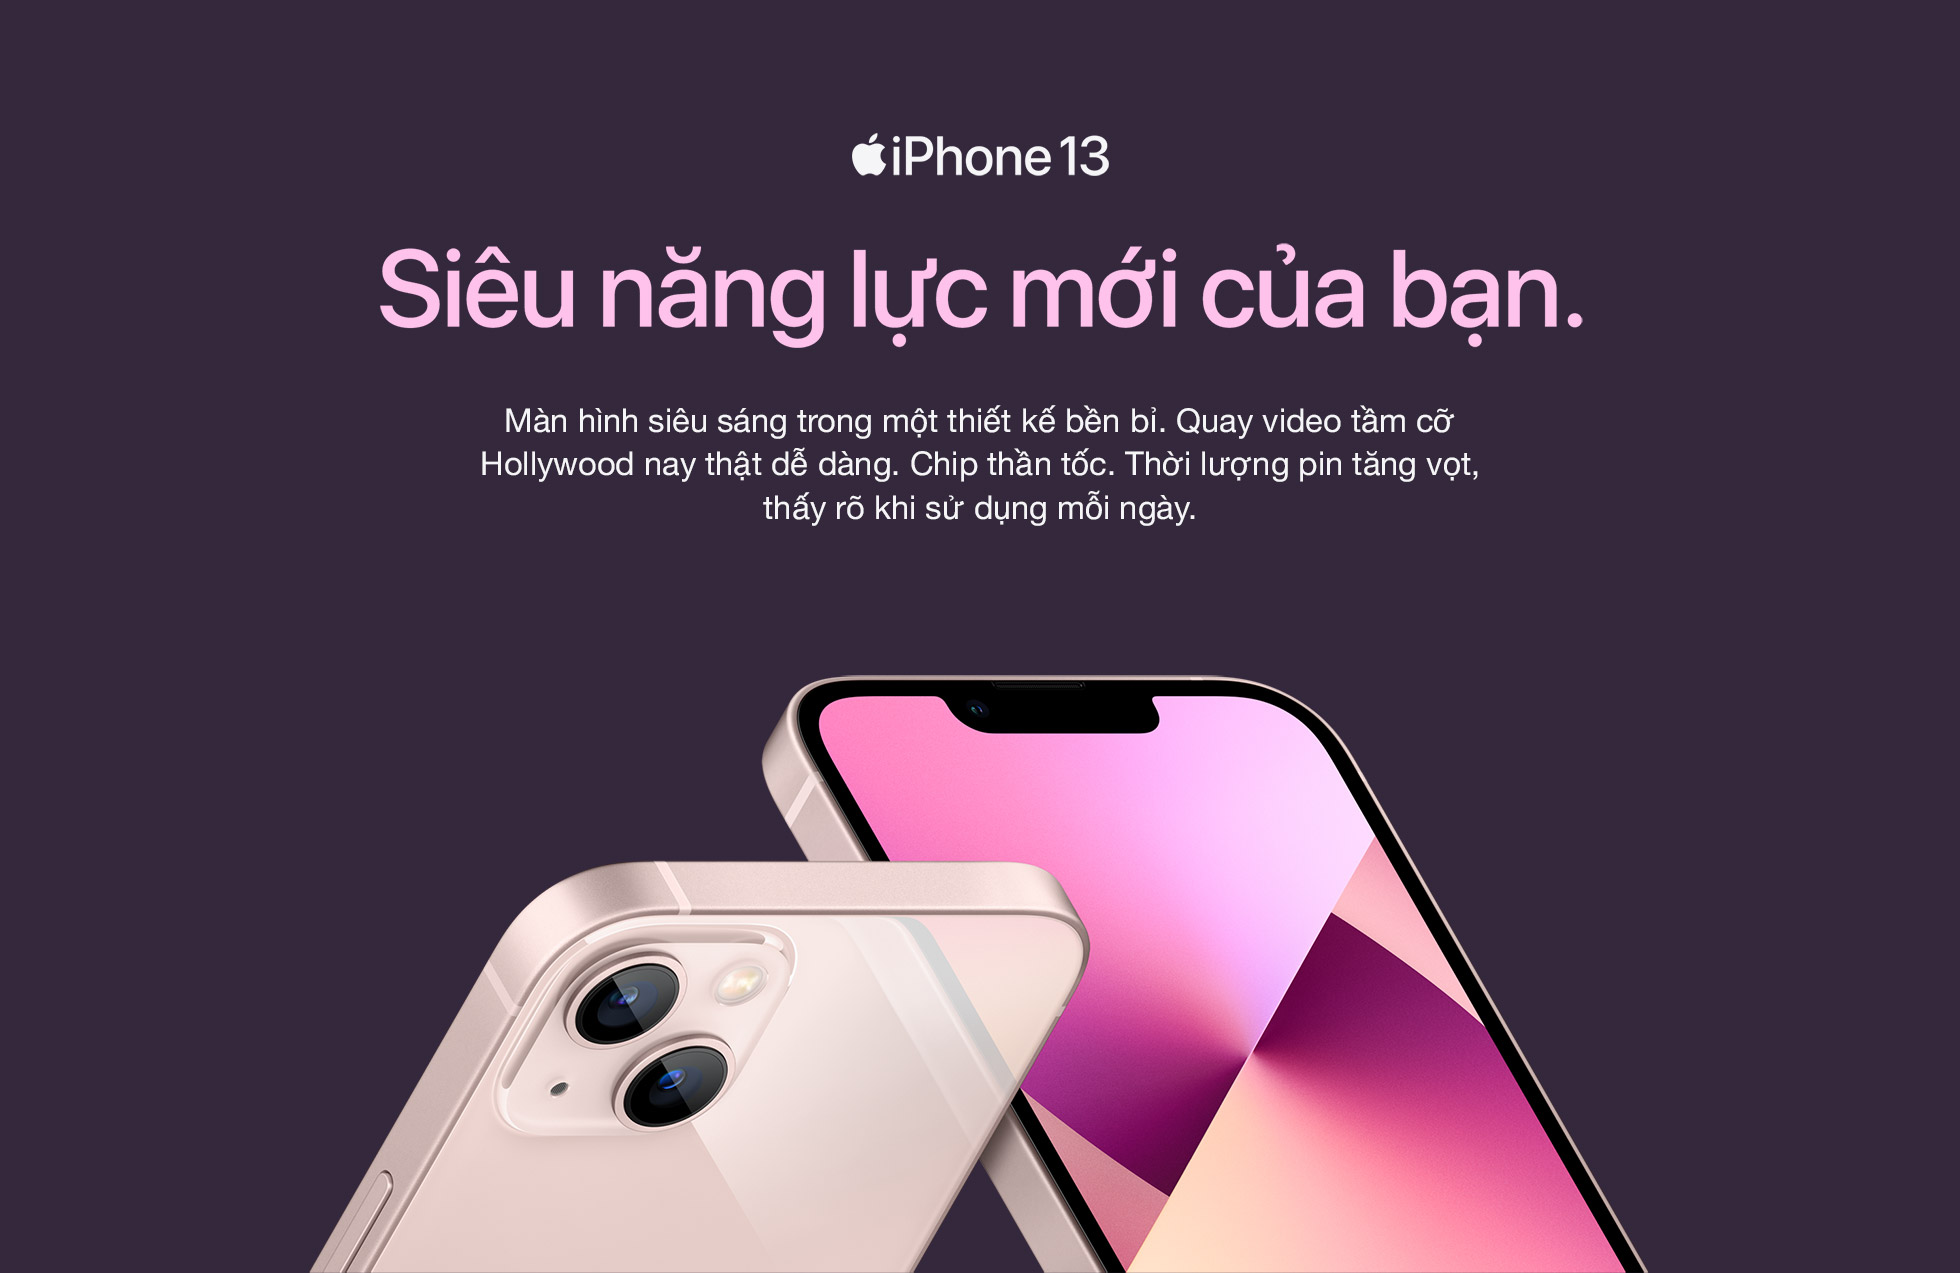 iPhone 13 Tính Năng & Thông Số Kỹ Thuật